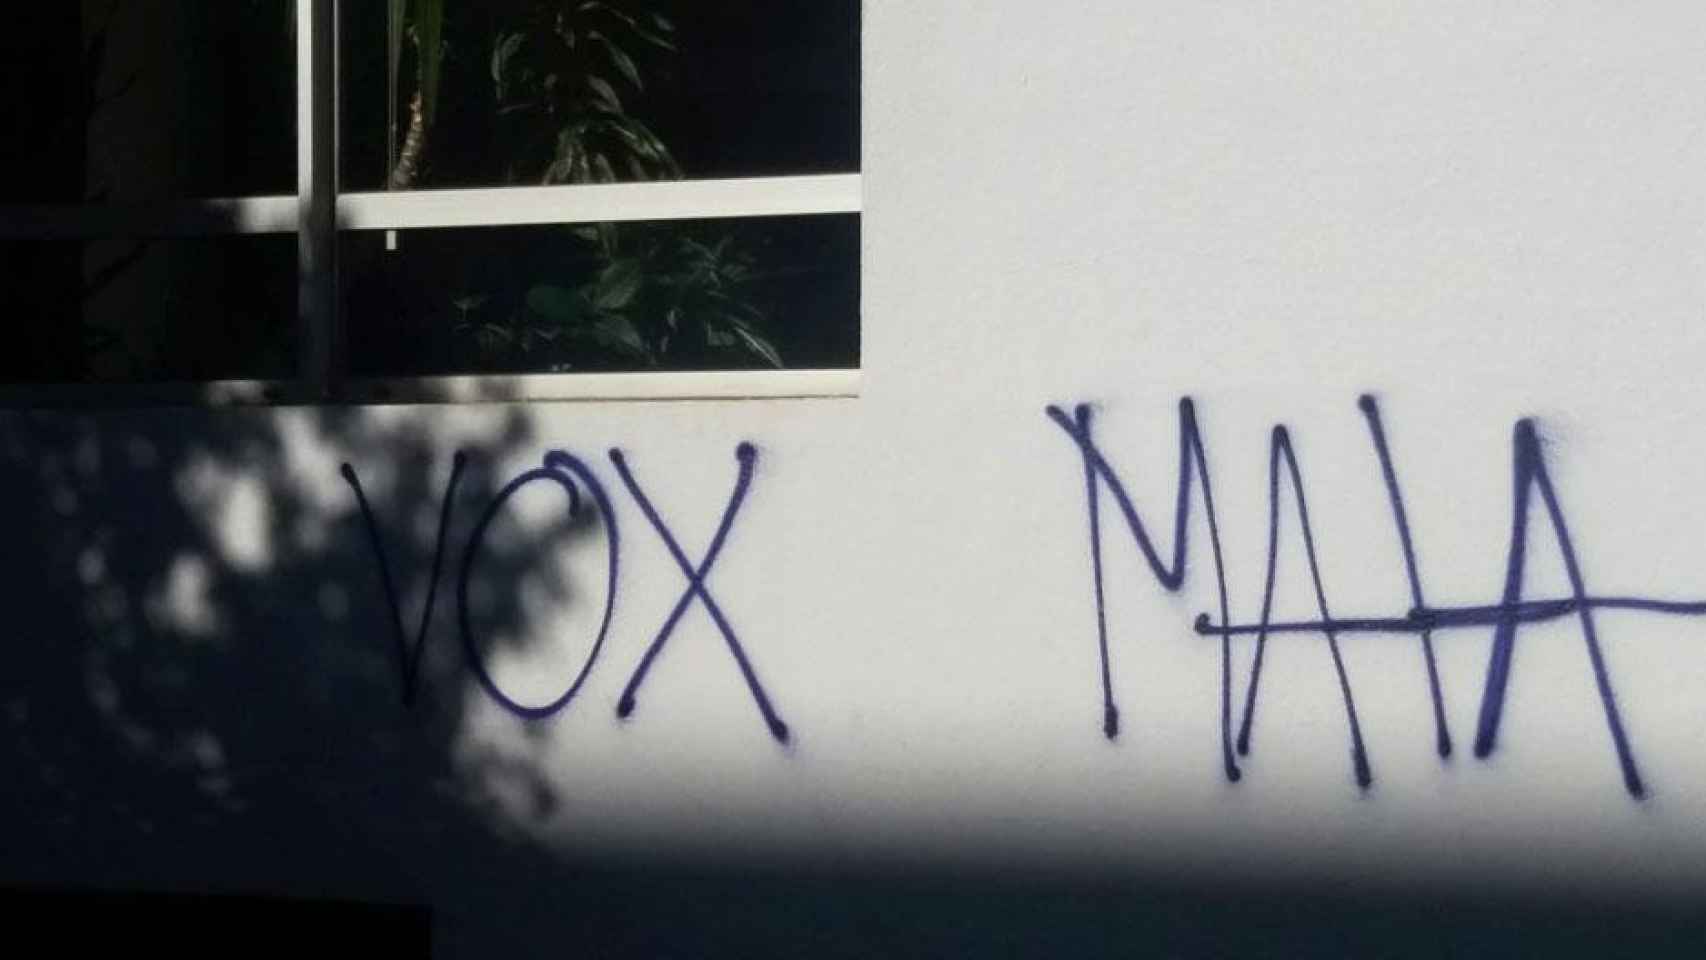 Pintada de 'Vox mata' en un centro cívico de Barcelona / VOX